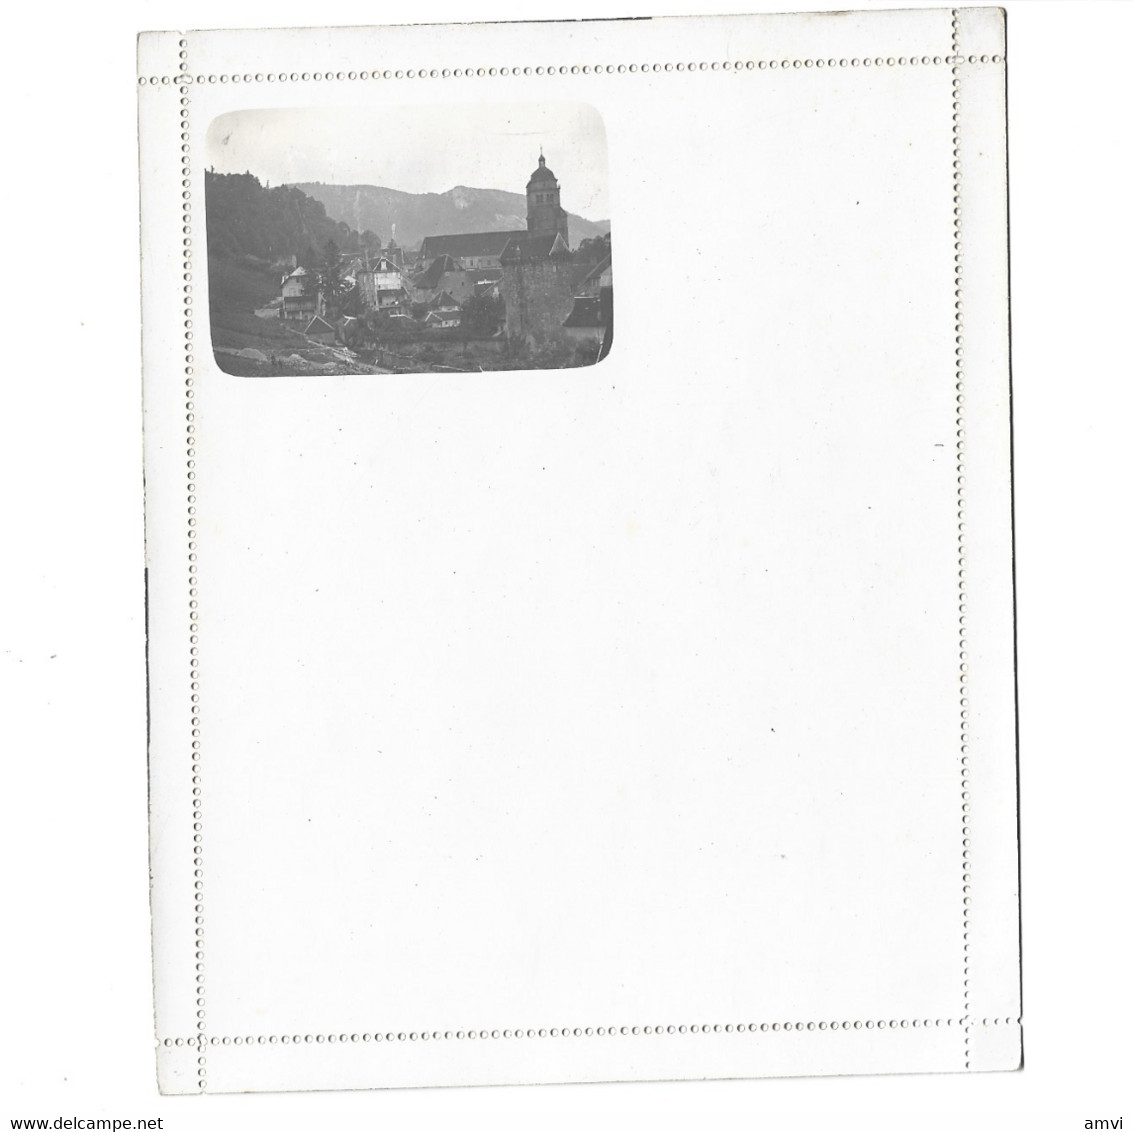 22-1 - 194 rare  lot de 5 cartes lettre photo lieu à identifier R Guileminot paris